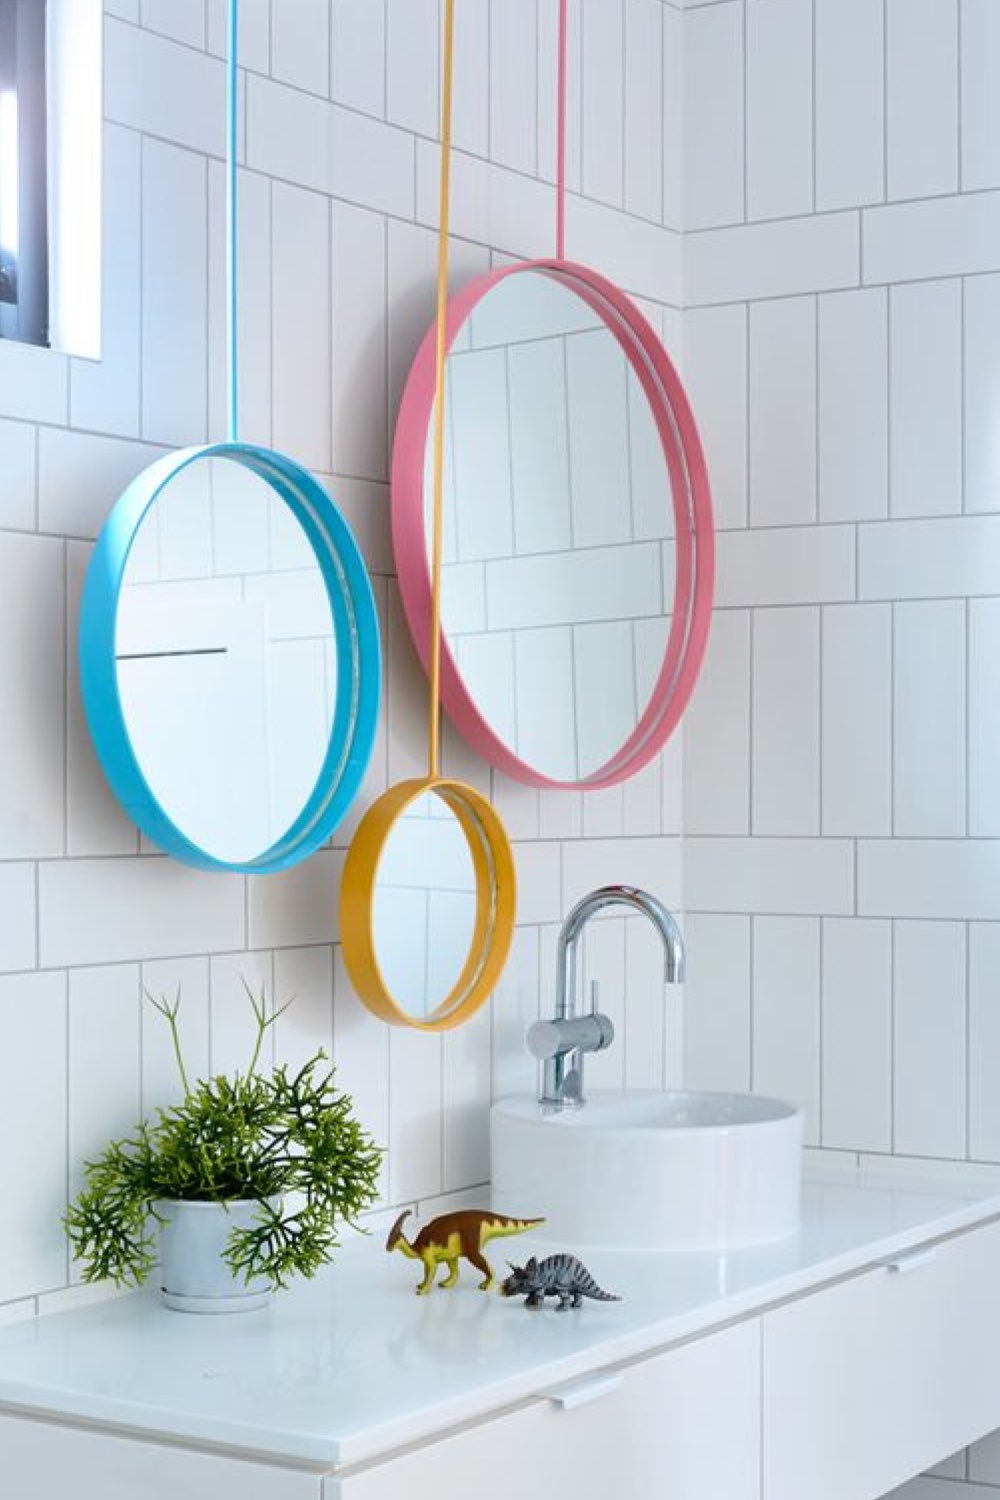 salle de bain exemple touche de couleur trio de miroirs rond encadrement coloré jaune bleu rose taille différente dessus plan vasque